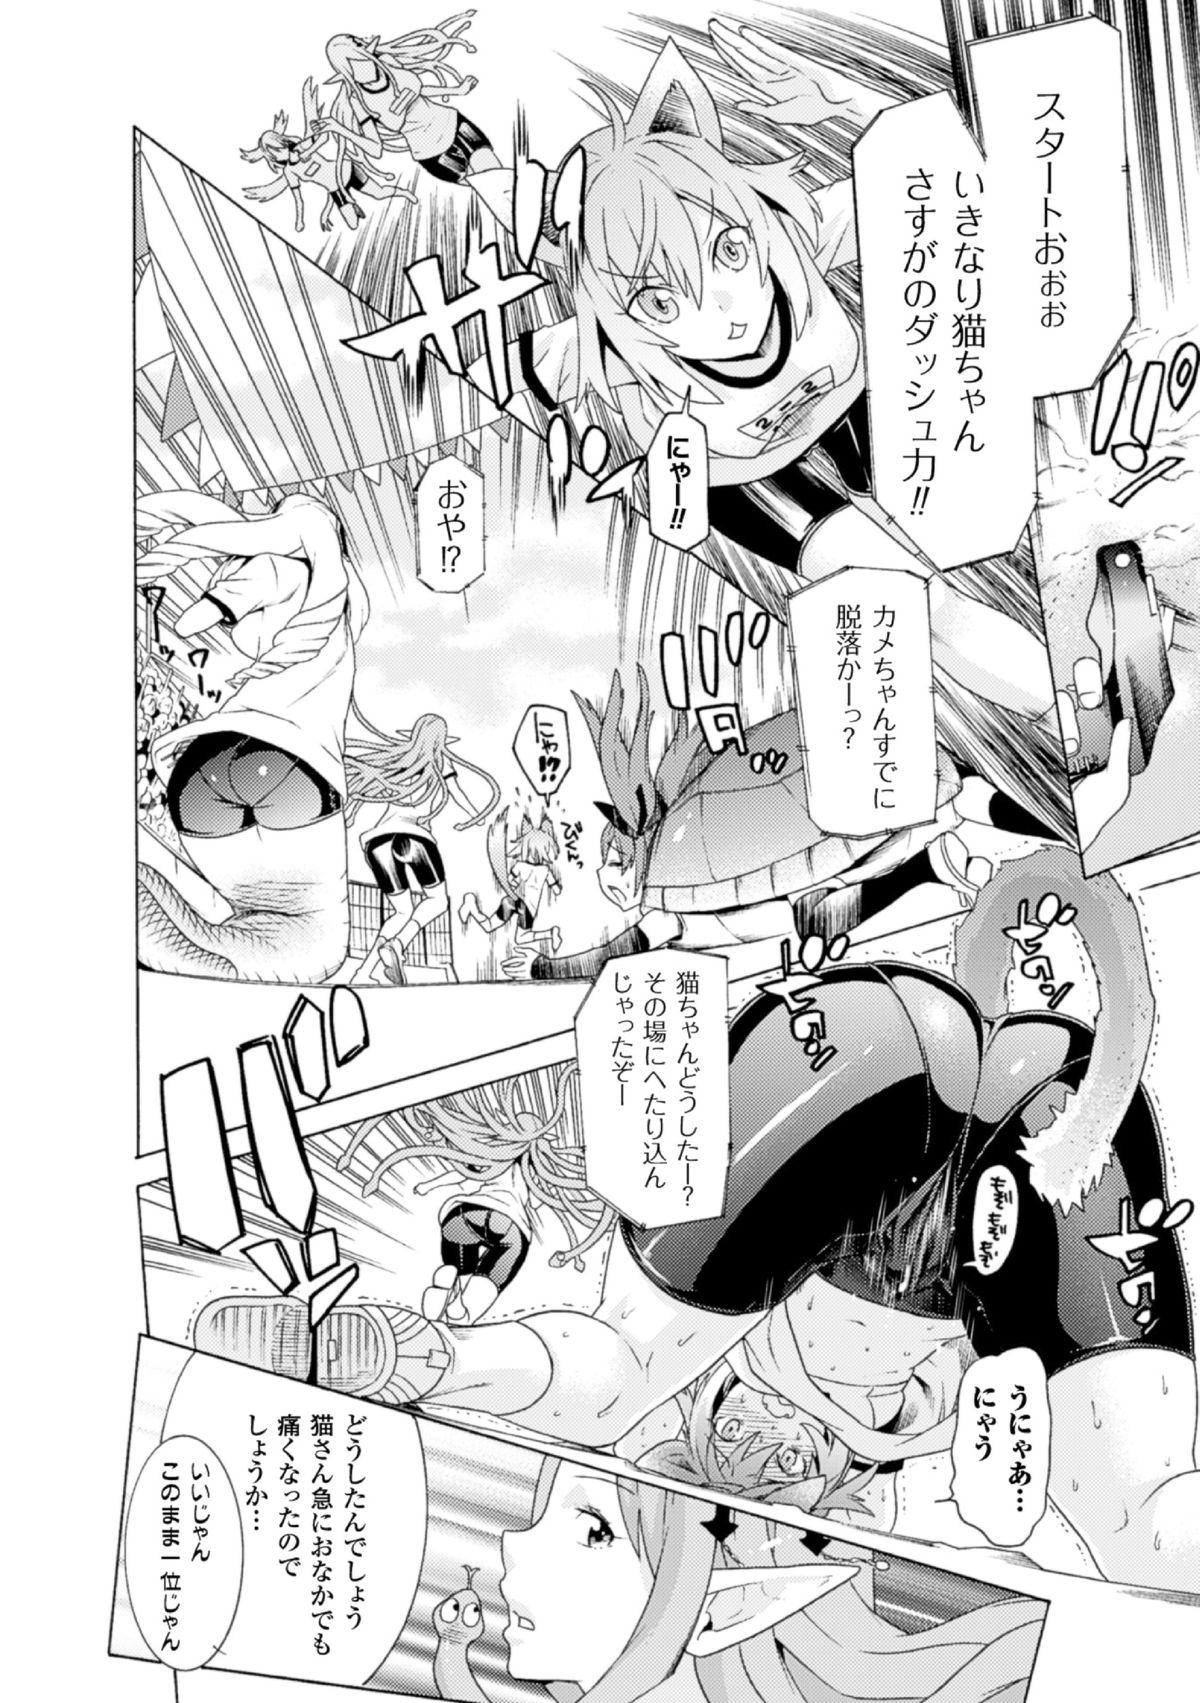 Lezbi 2D Comic Magazine - Monster Musume ga Tsudou Ishuzoku Gakuen e Youkoso! Vol. 2 No Condom - Page 6